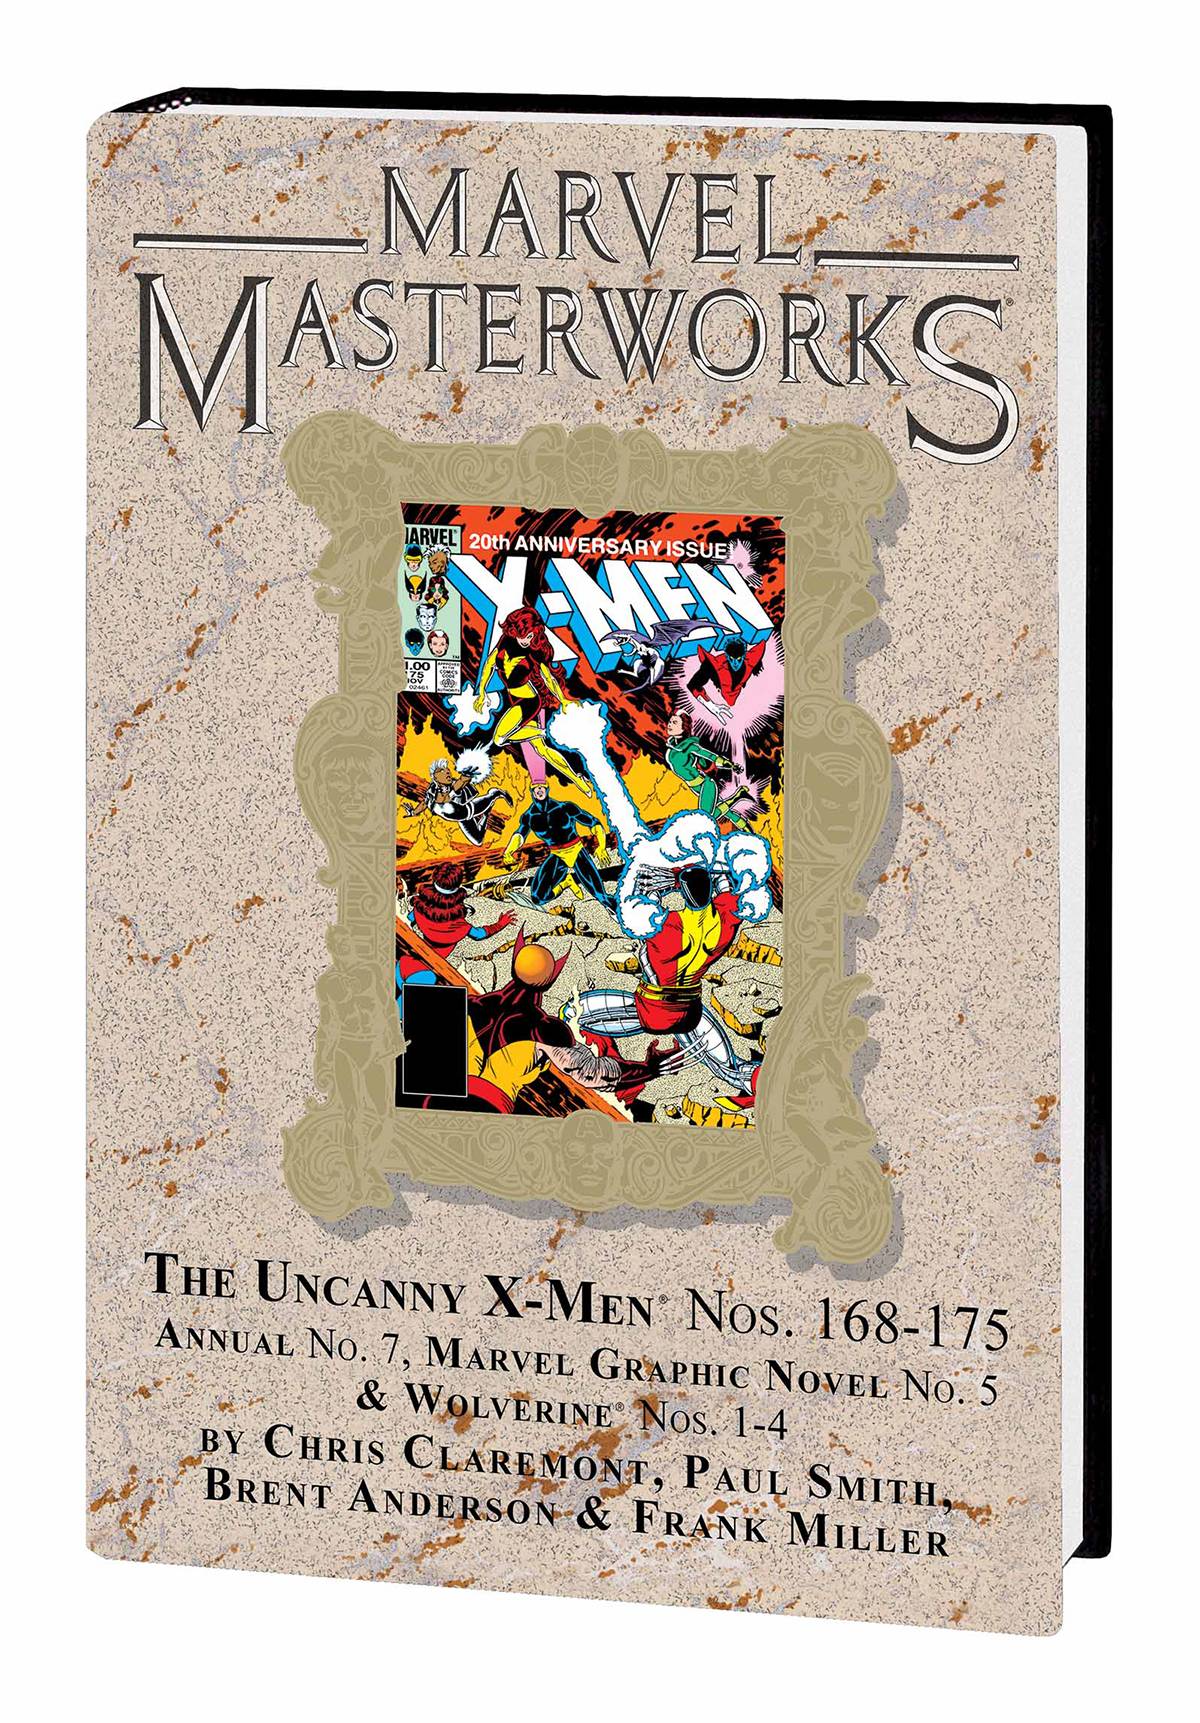 Marvel Masterworks Uncanny X-Men Hardcover Volume 9 Direct Market Variant Edition 214